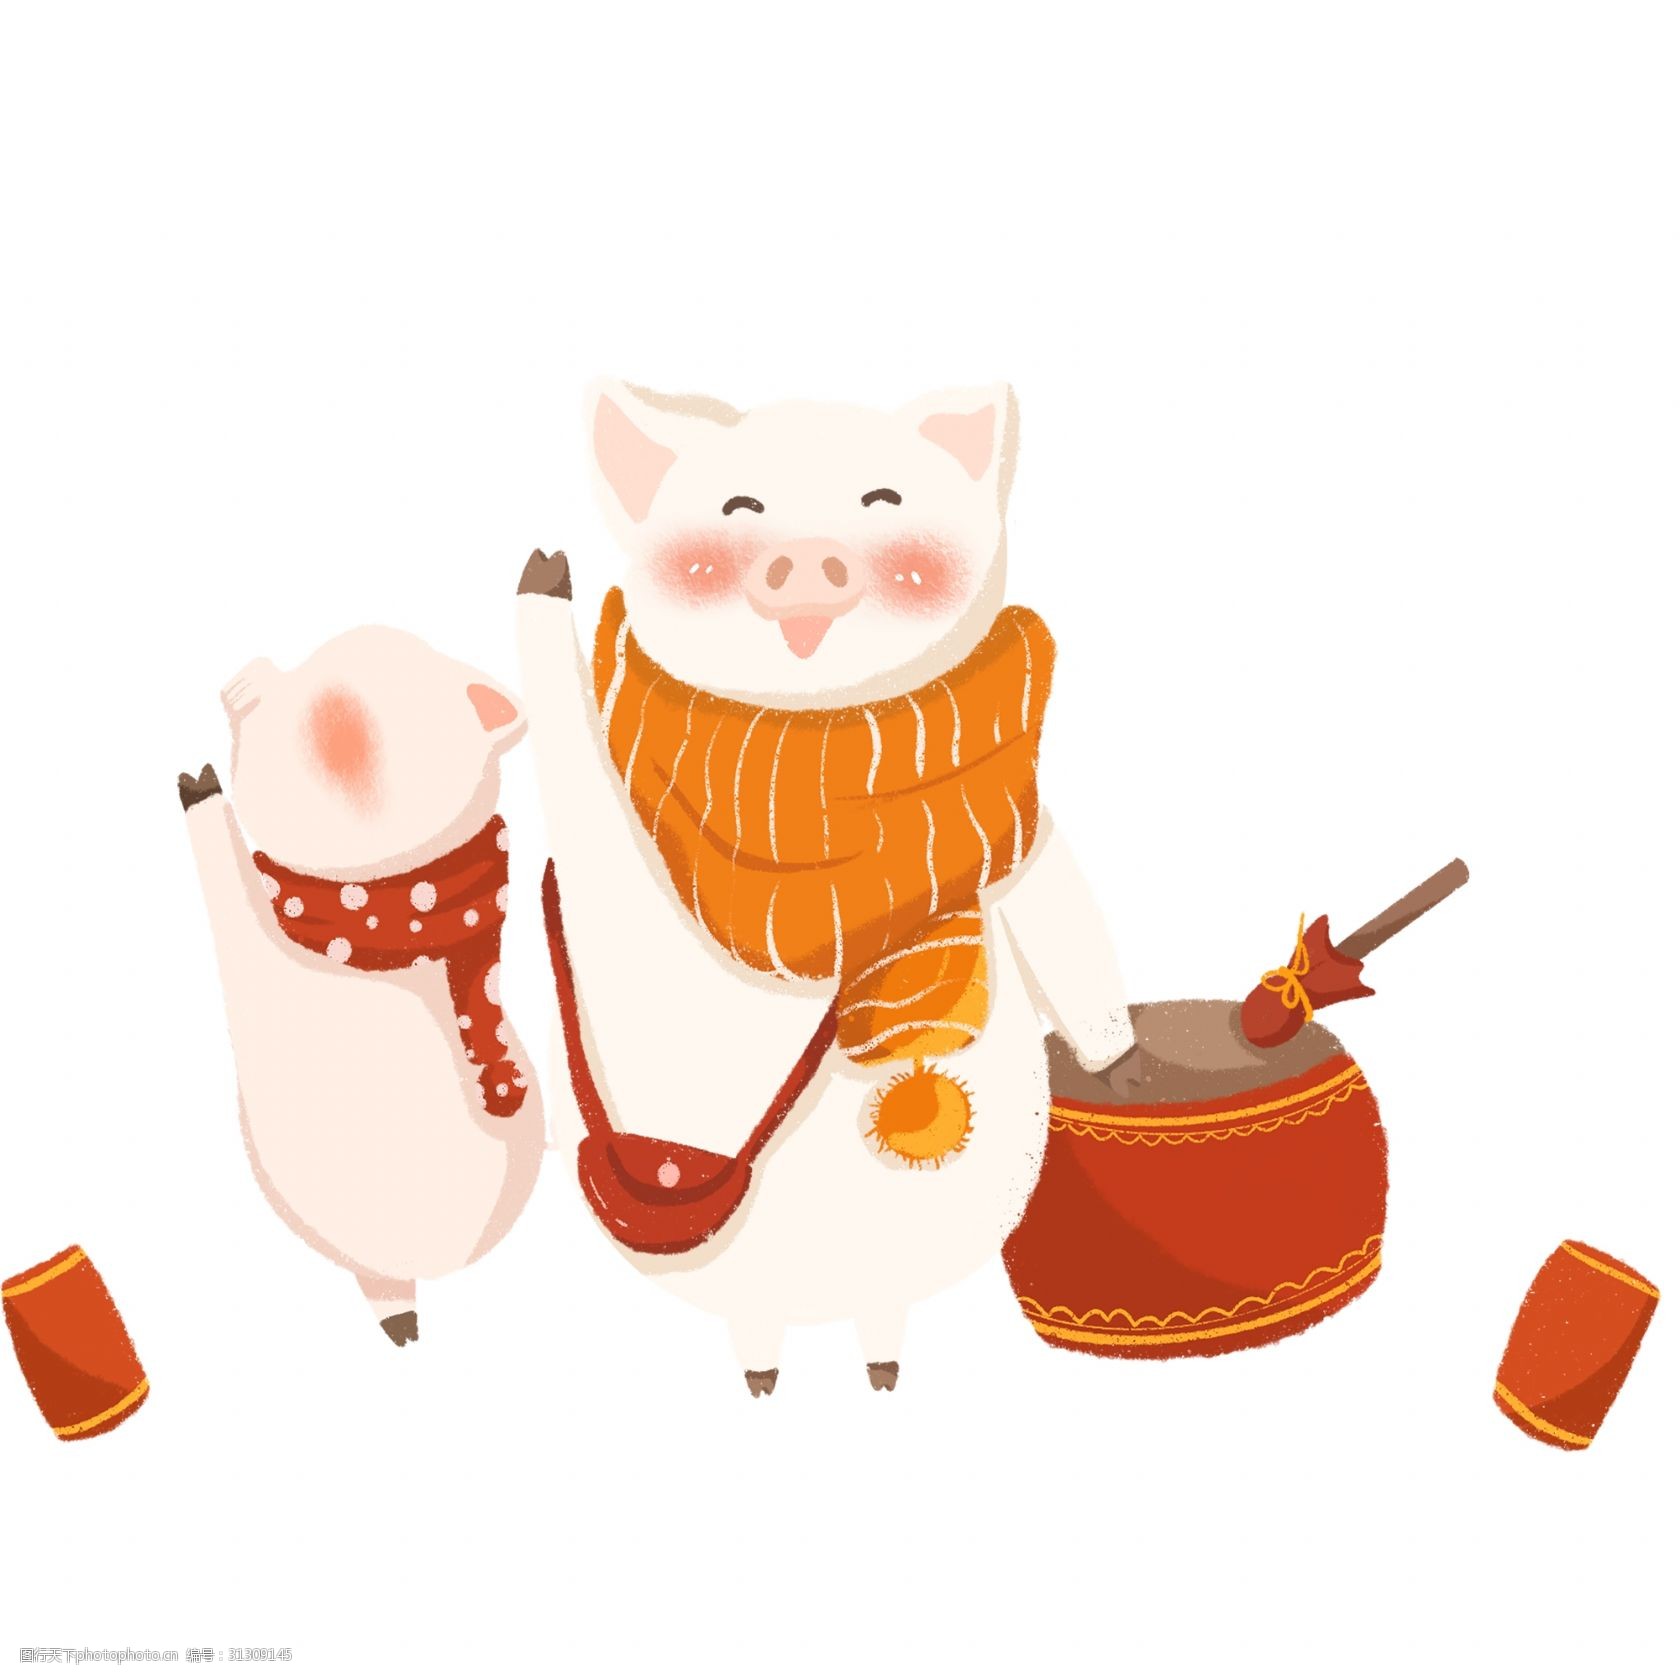 2019年猪年 卡通猪 小猪公仔 猪队友 敲锣打鼓的可爱小猪